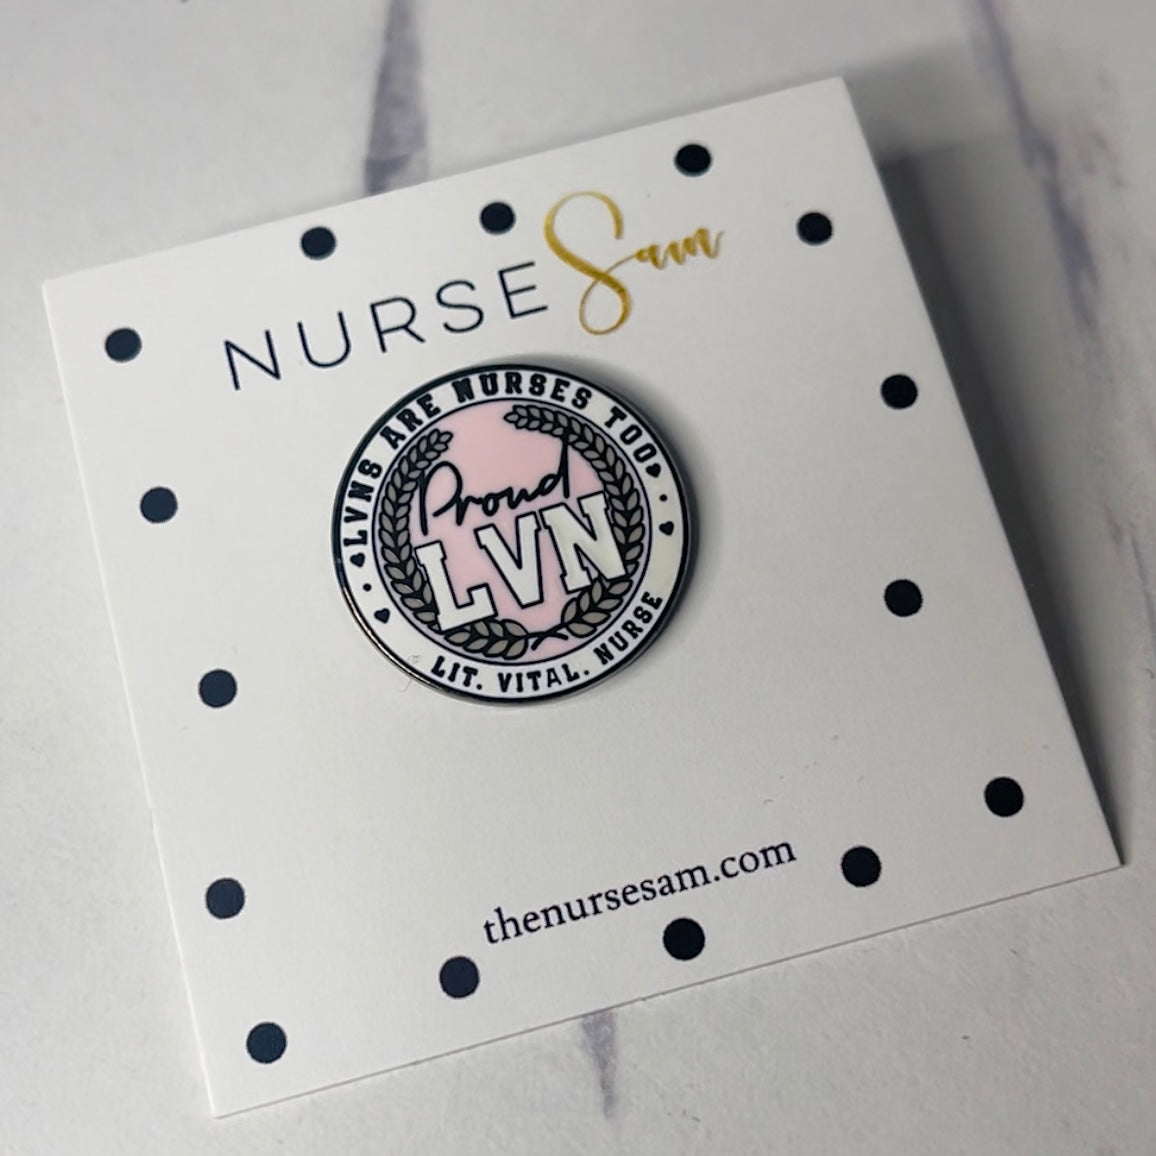 LVN Licensed Vocational Nurse LVN Emblem Pin